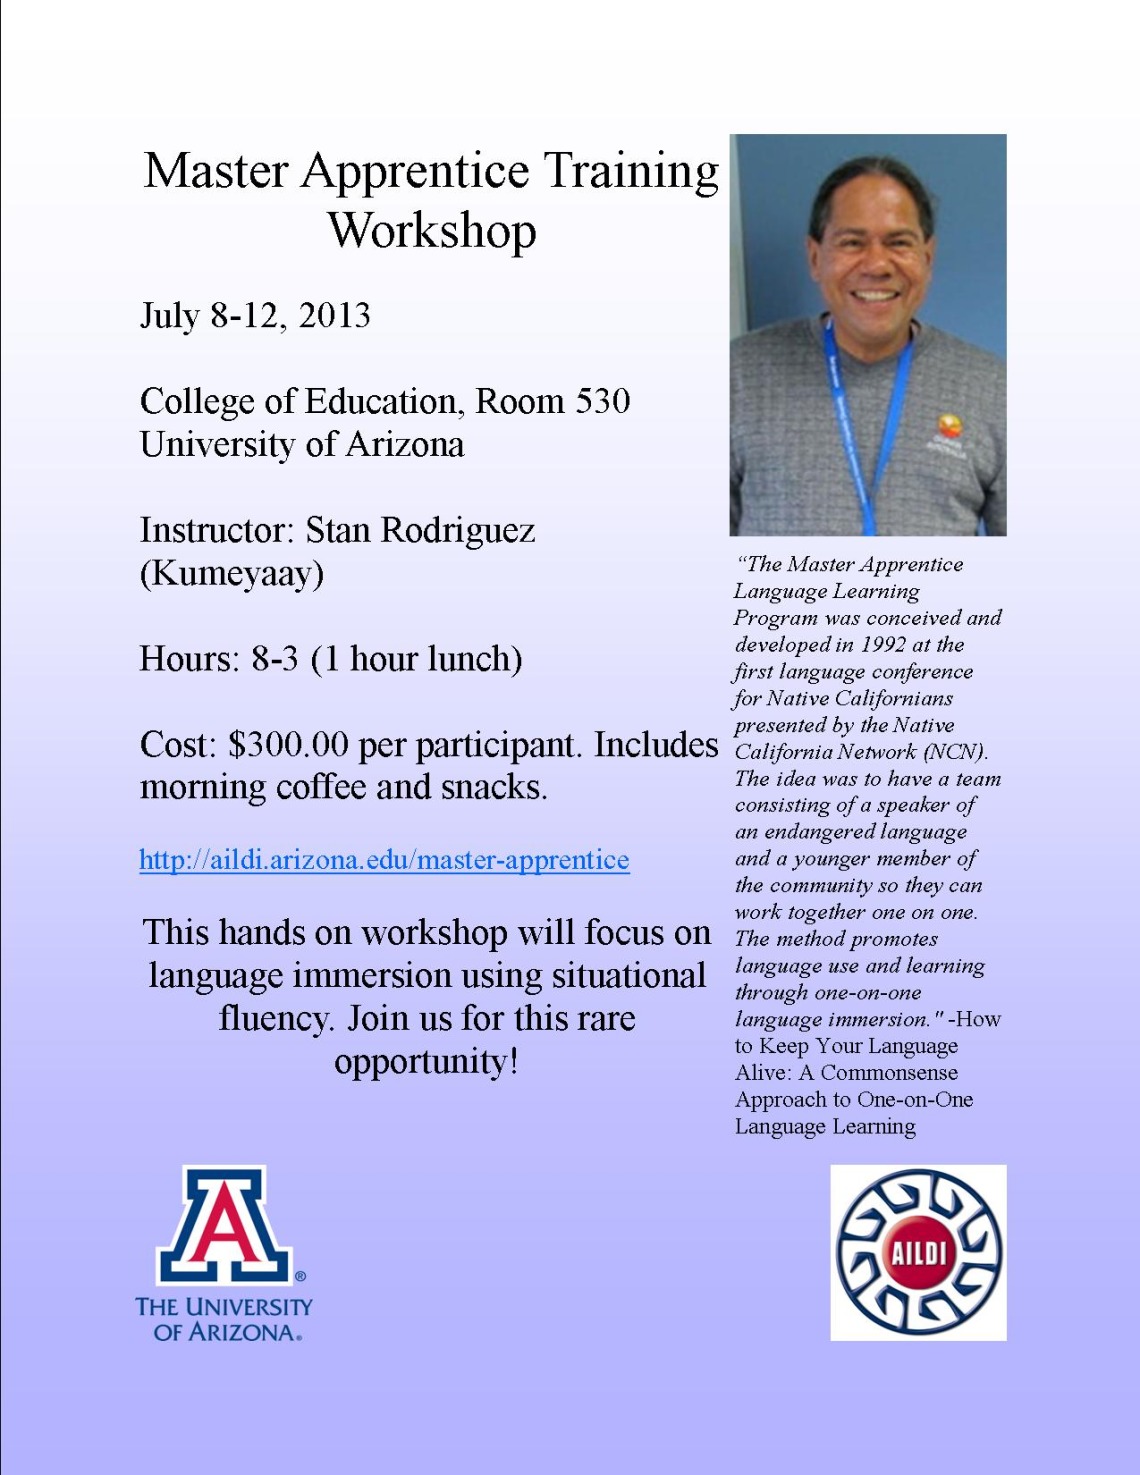 Master Apprentice Training Workshop poster